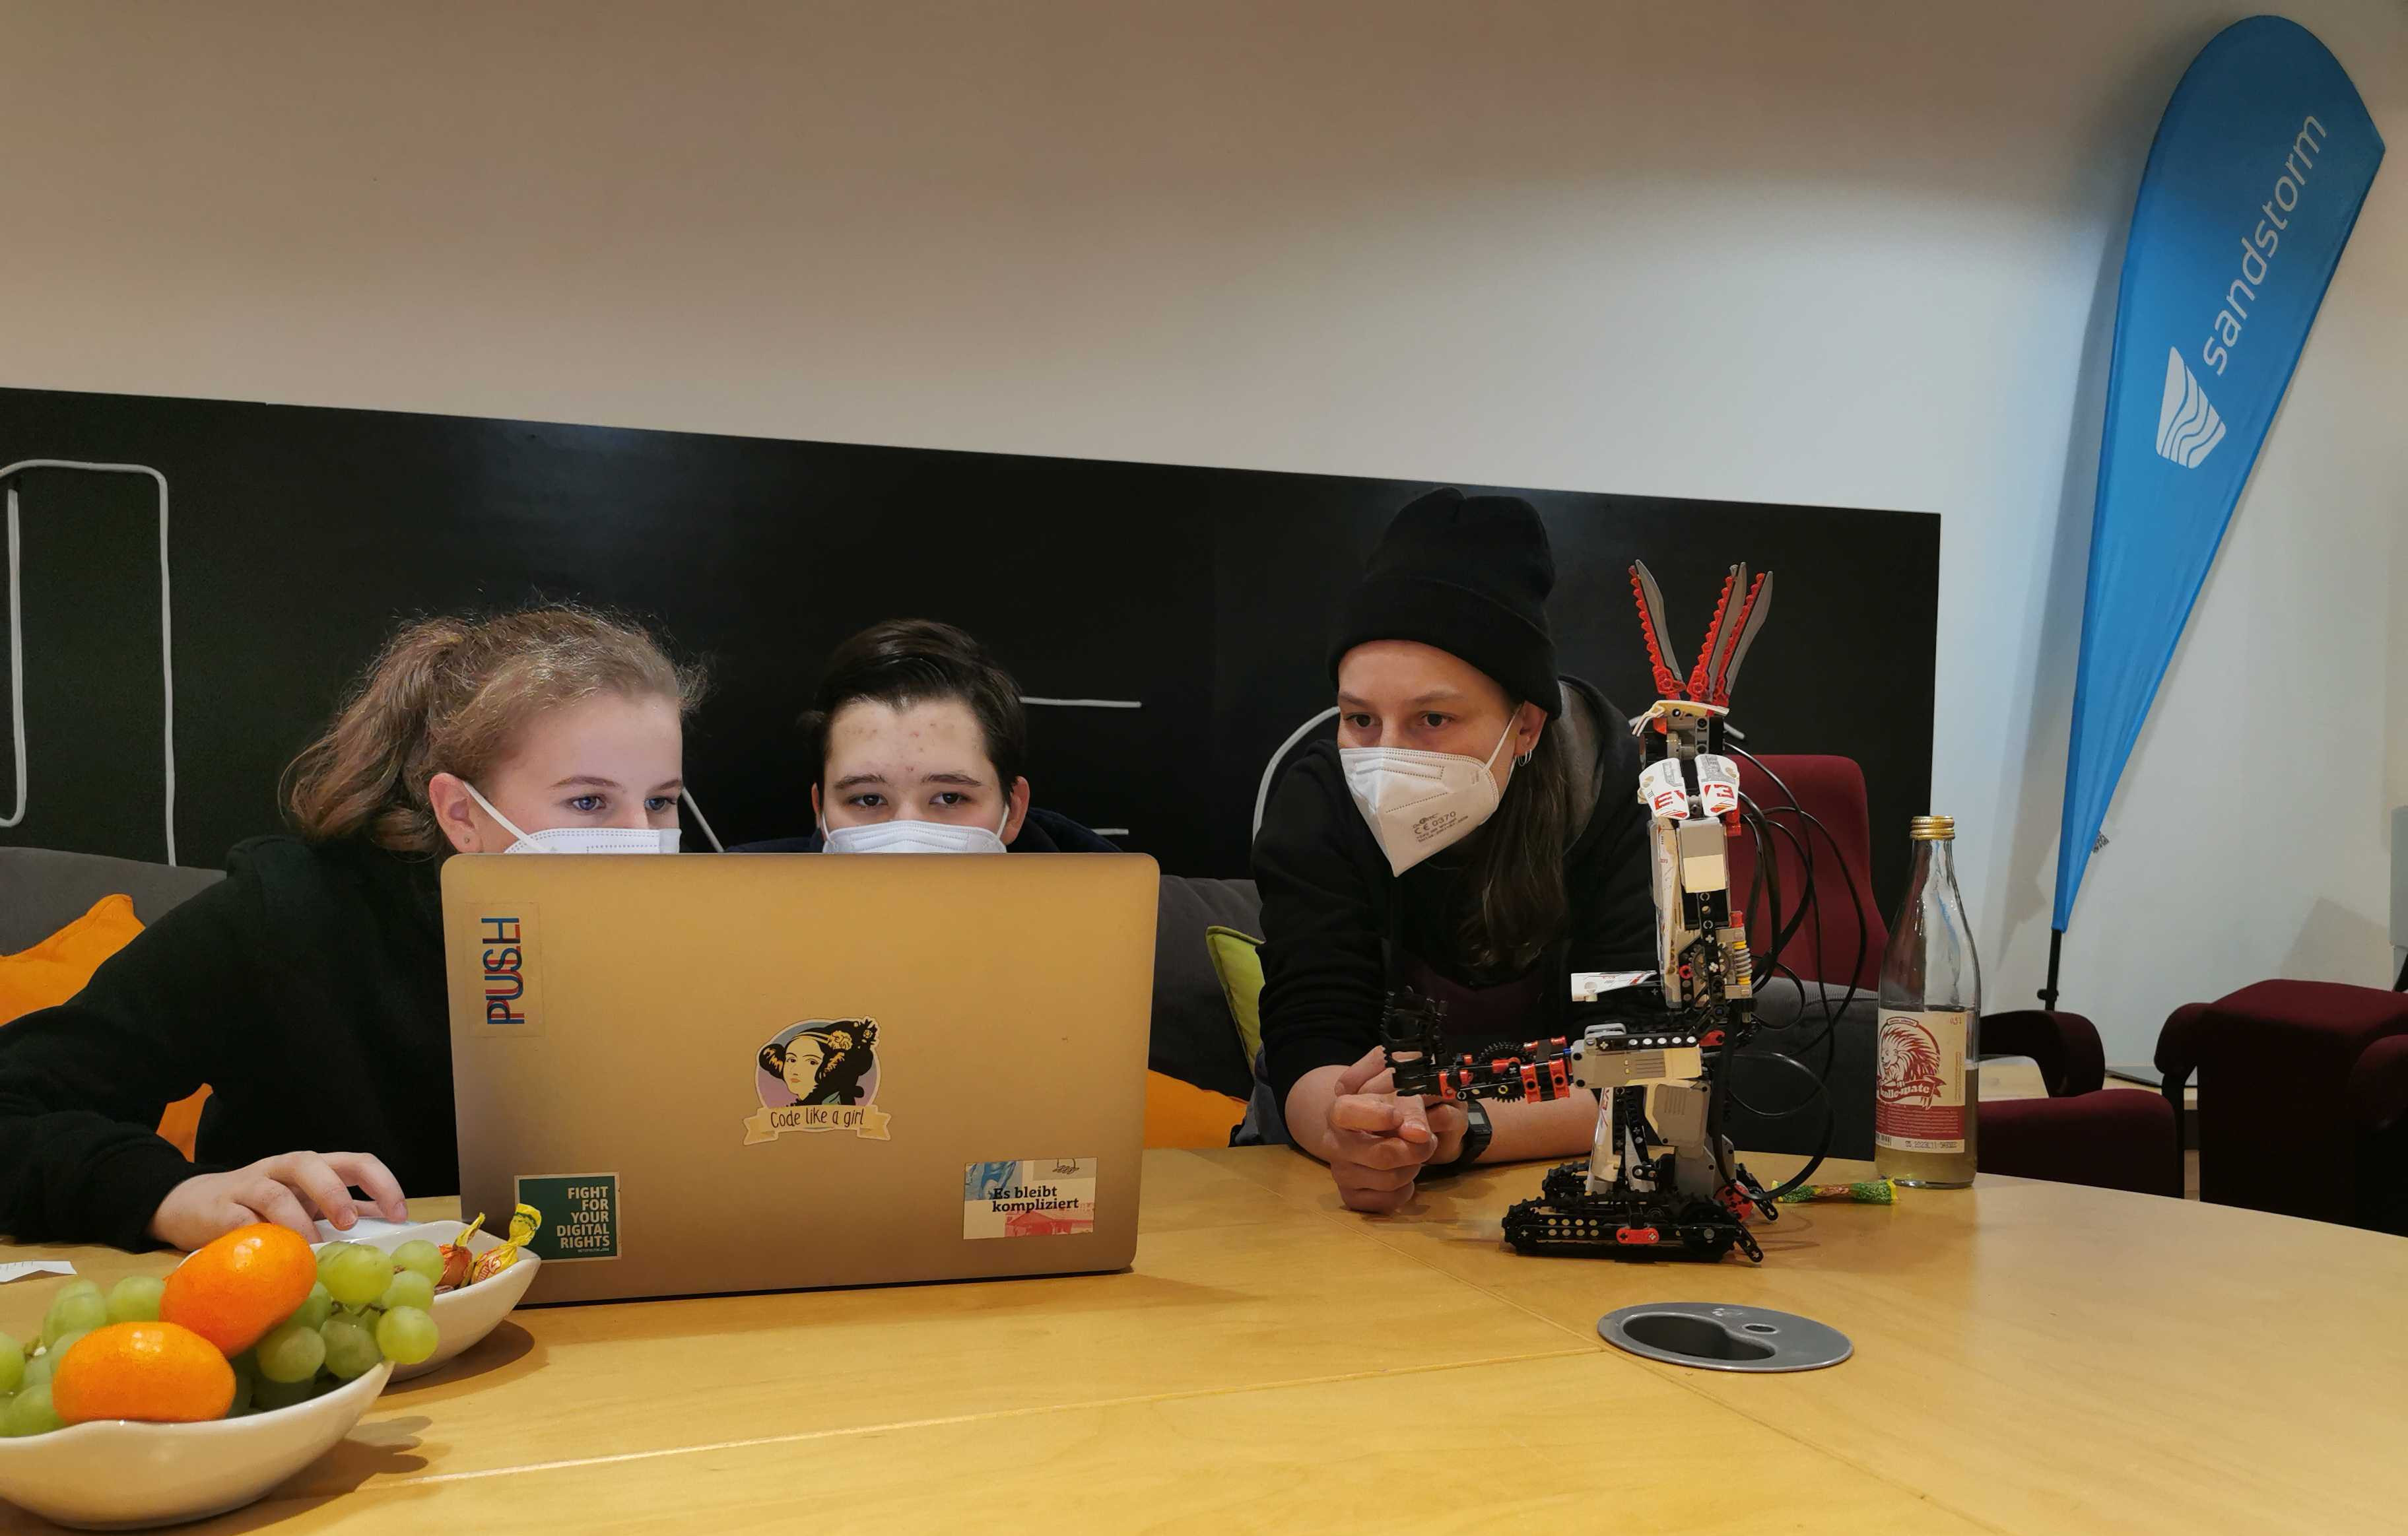 Zwei Schülerinnen und eine Programmiererin schauen auf einen Bildschirm, daneben steht ein Lego Mindstorms Roboter